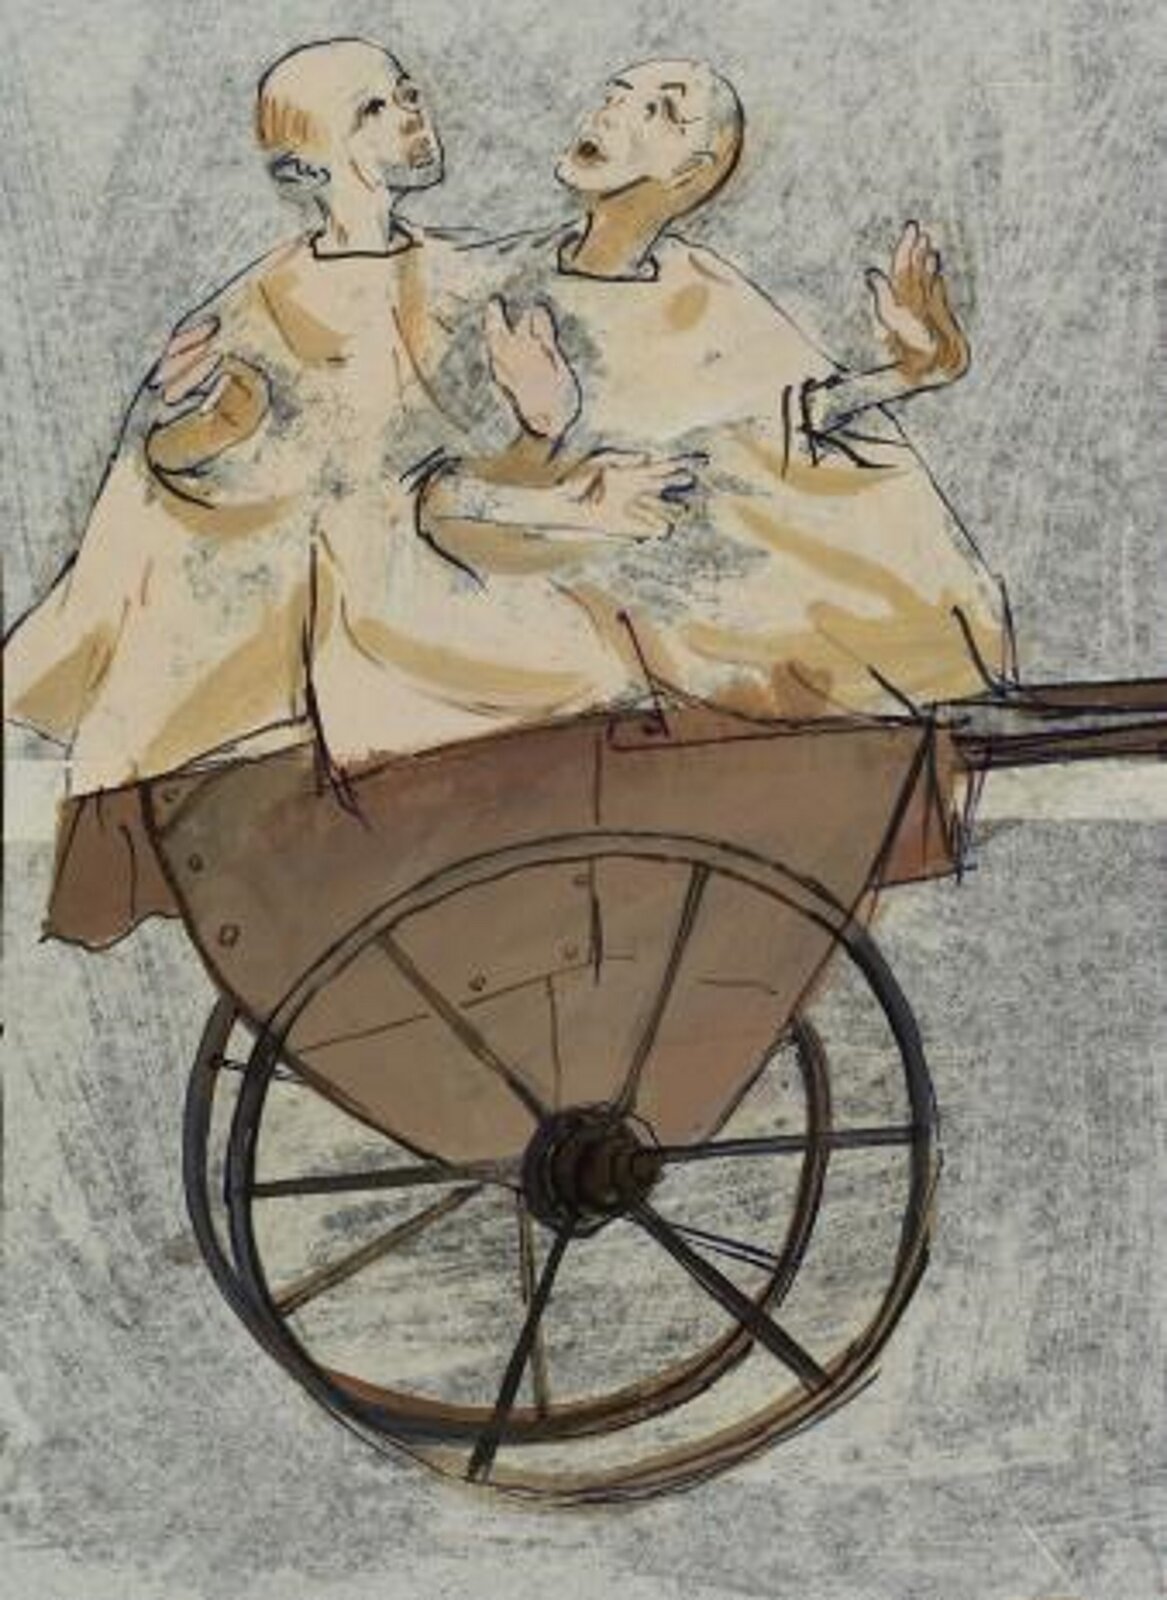 Ilustracja przedstawia obraz pt „Dzieci w wózku na śmieci” z cyklu: „Ludzie atrapy” autorstwa Tadeusza Kantora. Obraz ukazuje dwóch mężczyzn w jasnych szatach, które siedzą na wózku na dwóch kółkach.